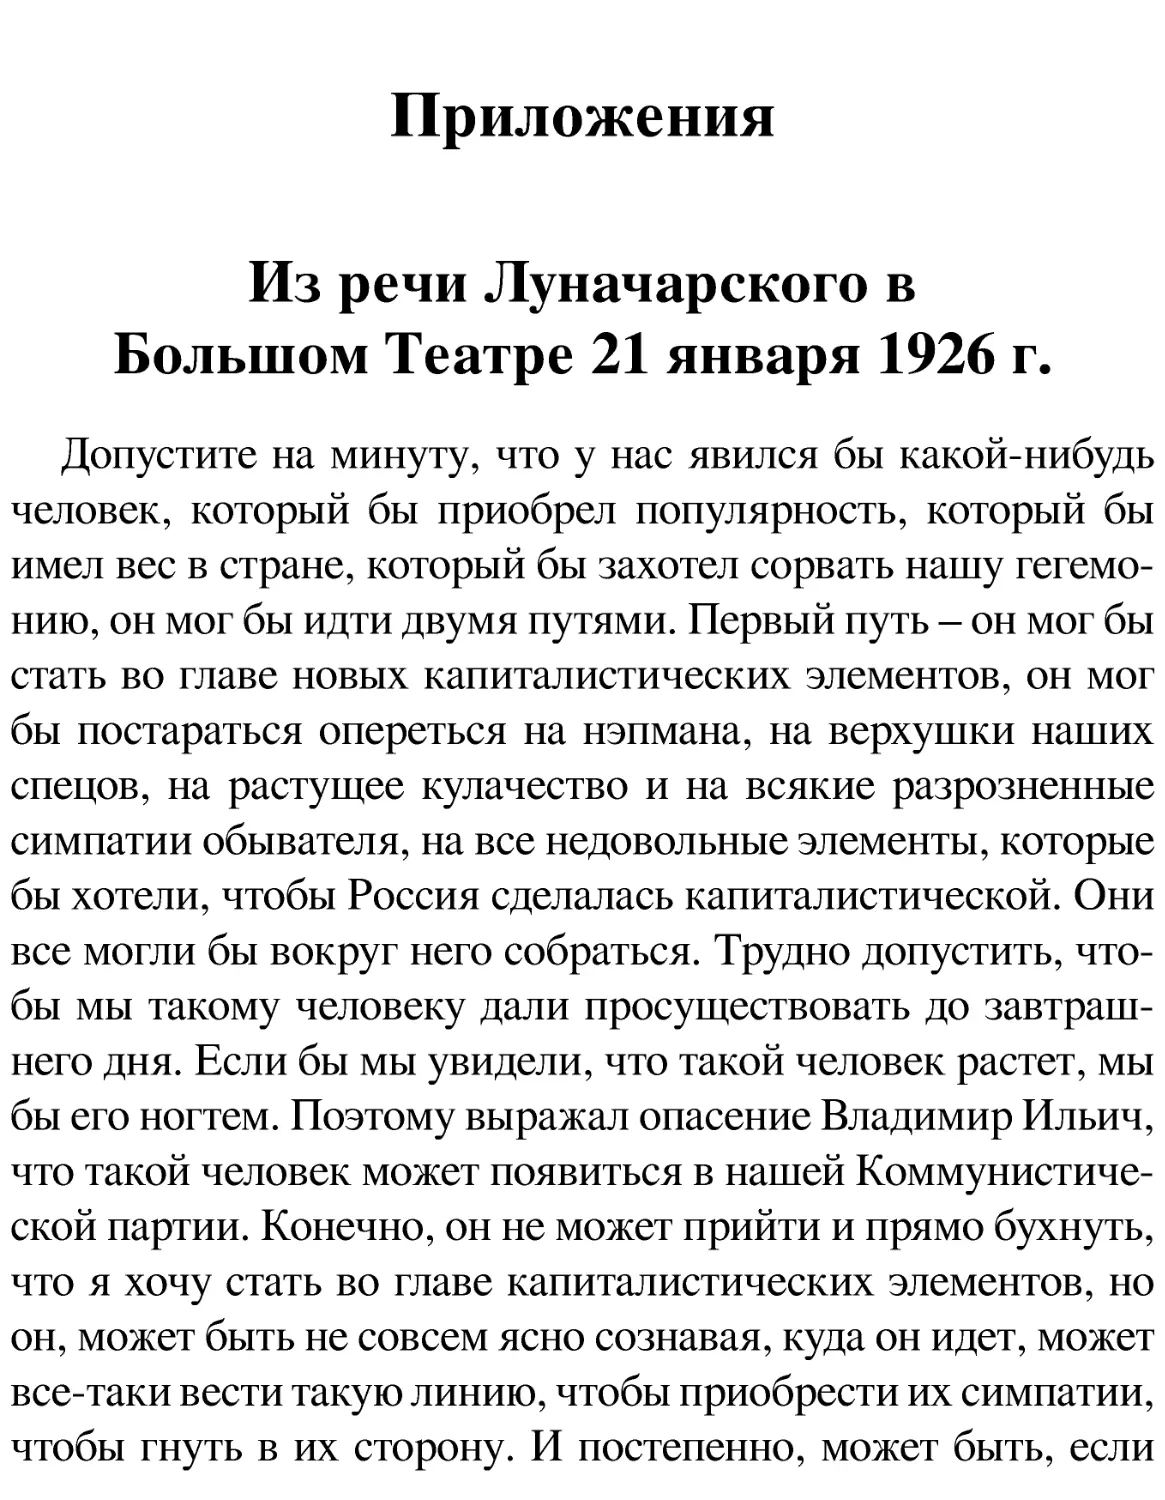 Приложения
Из речи Луначарского в Большом Театре 21 января 1926 г.